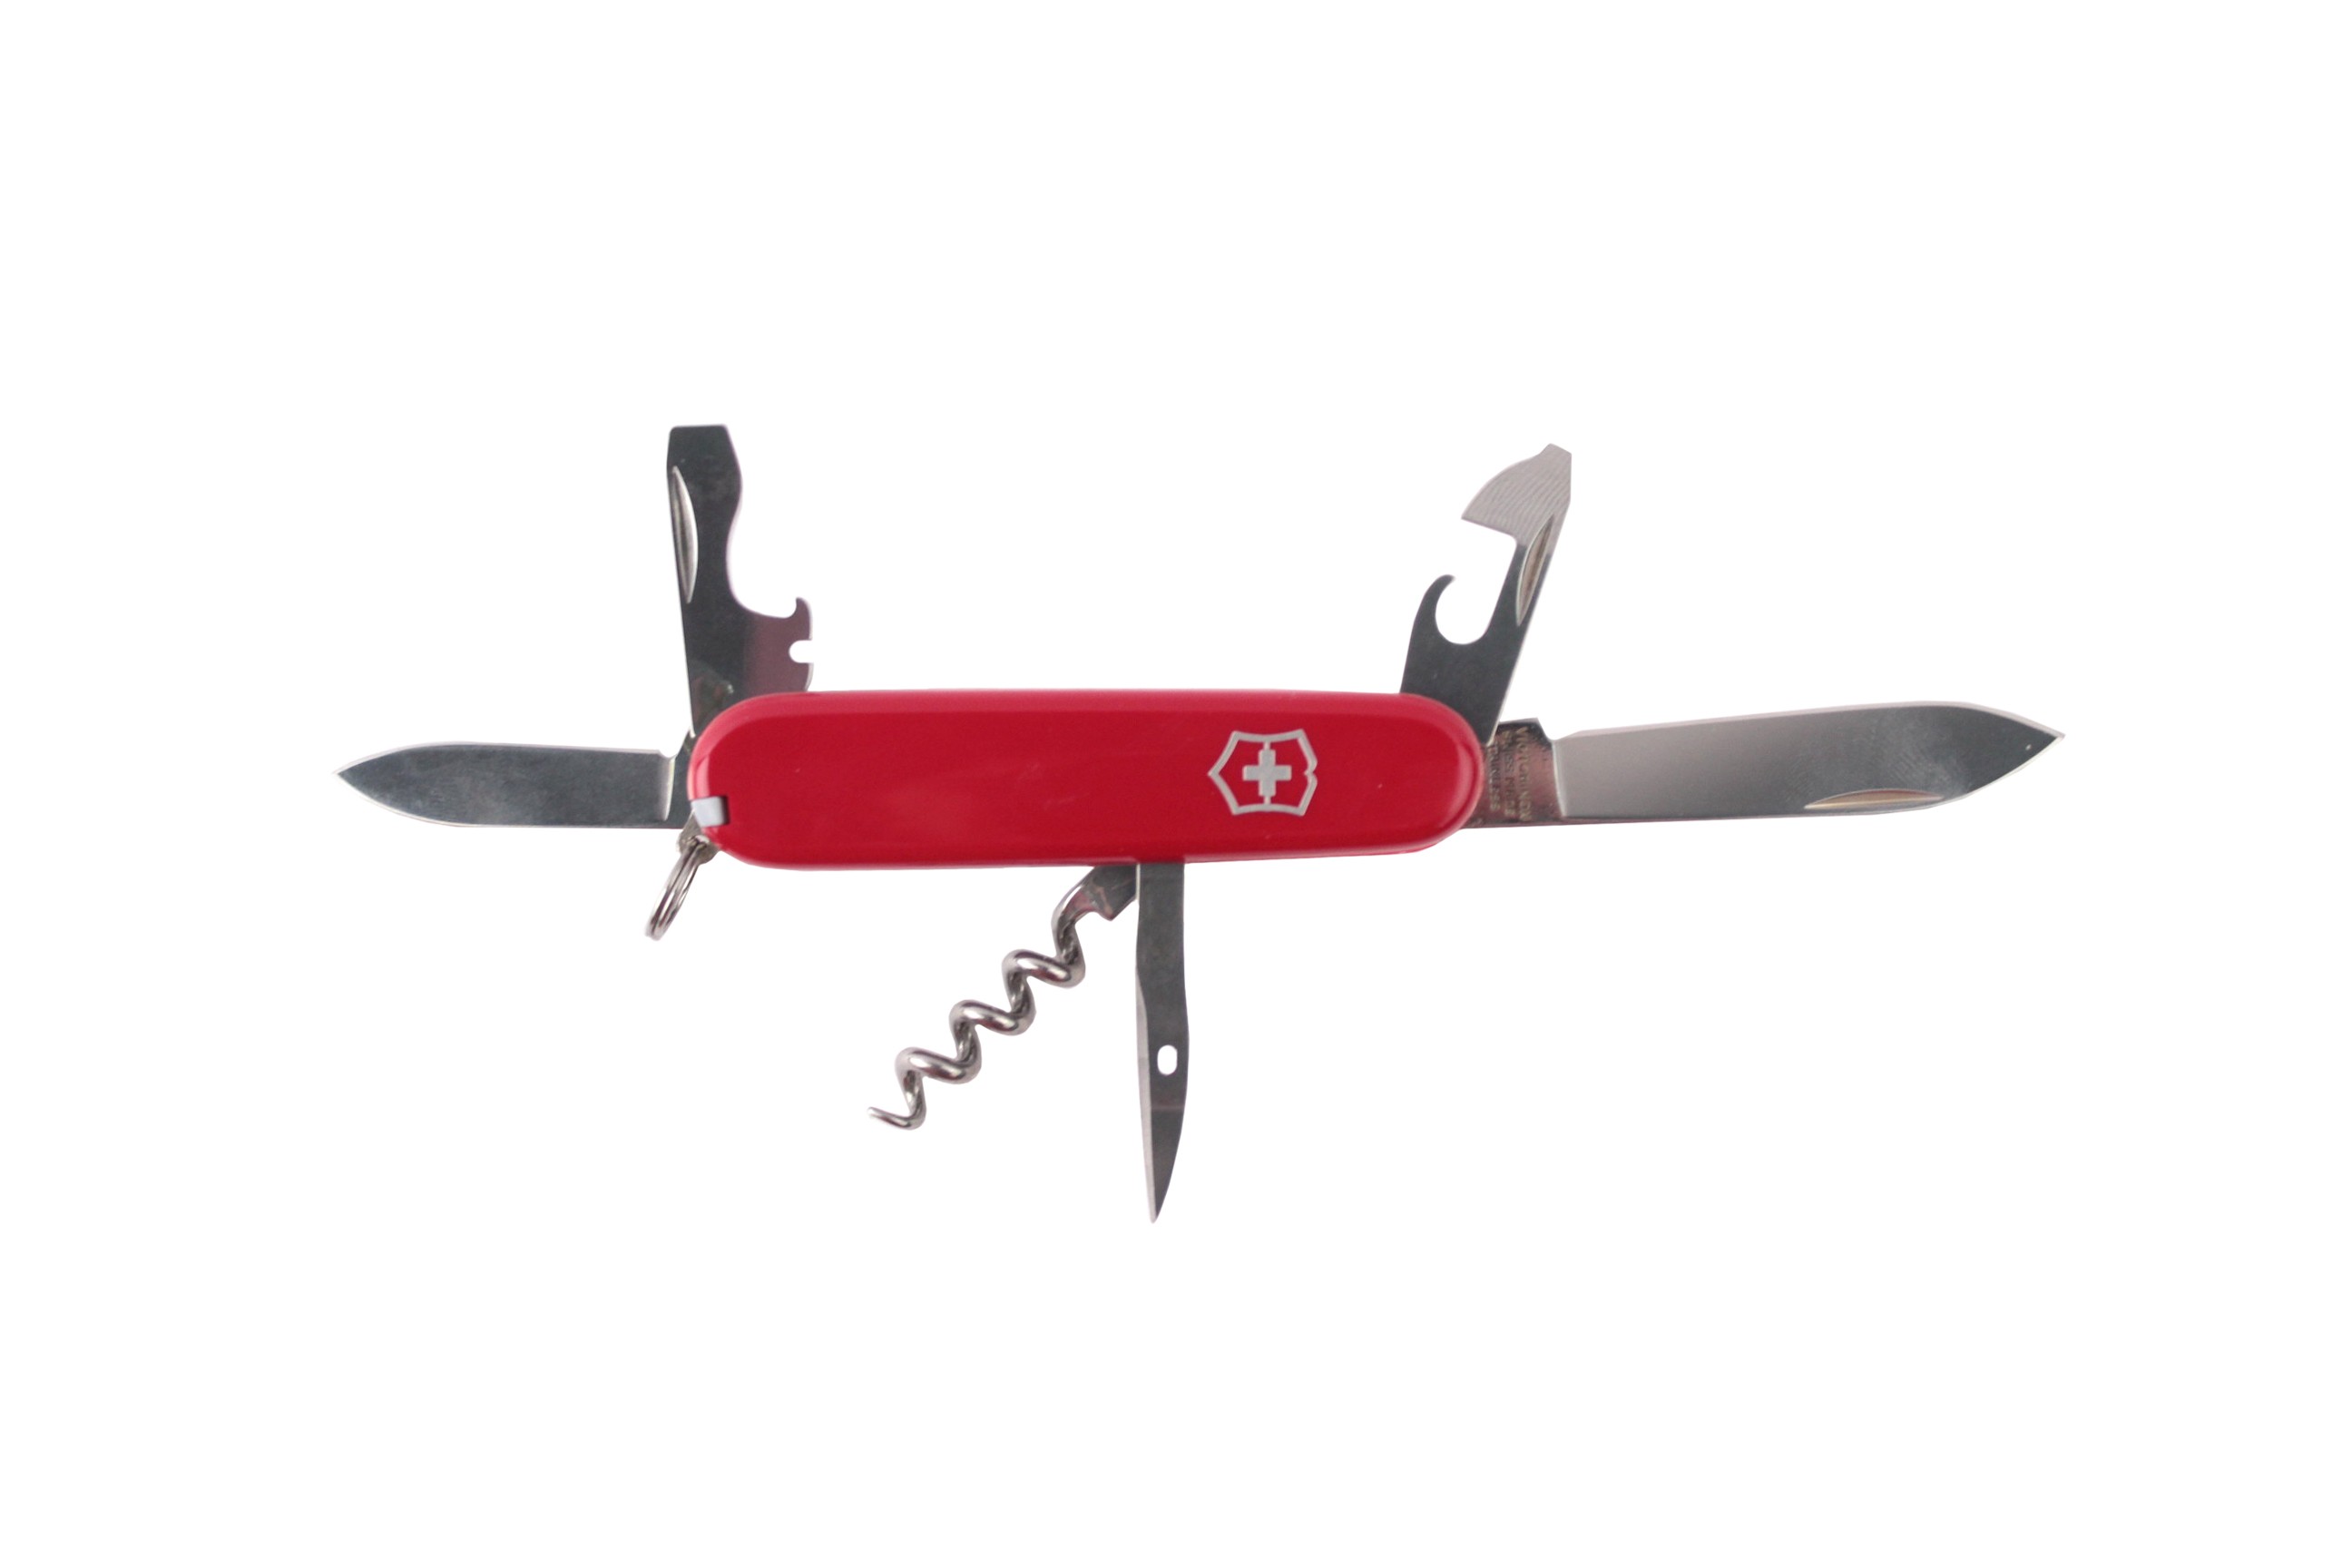 Нож Victorinox Tourist 84мм 12 функций красный - фото 1